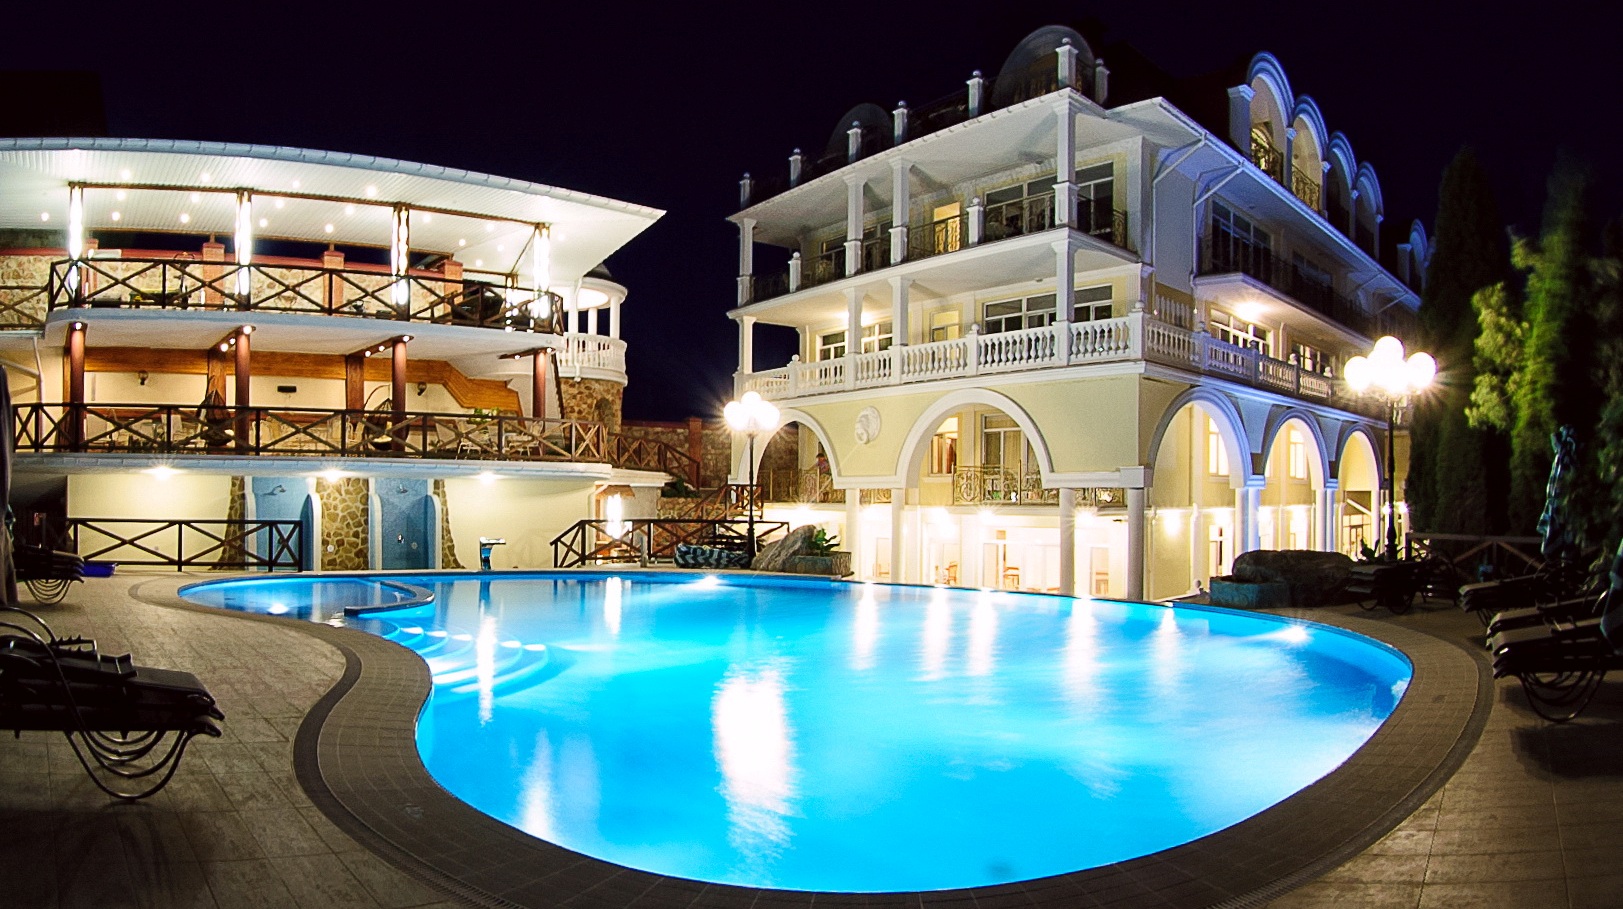 Отель Александрия - современный гостиничный комплекс в Крыму приглашает провести Майские возле моря